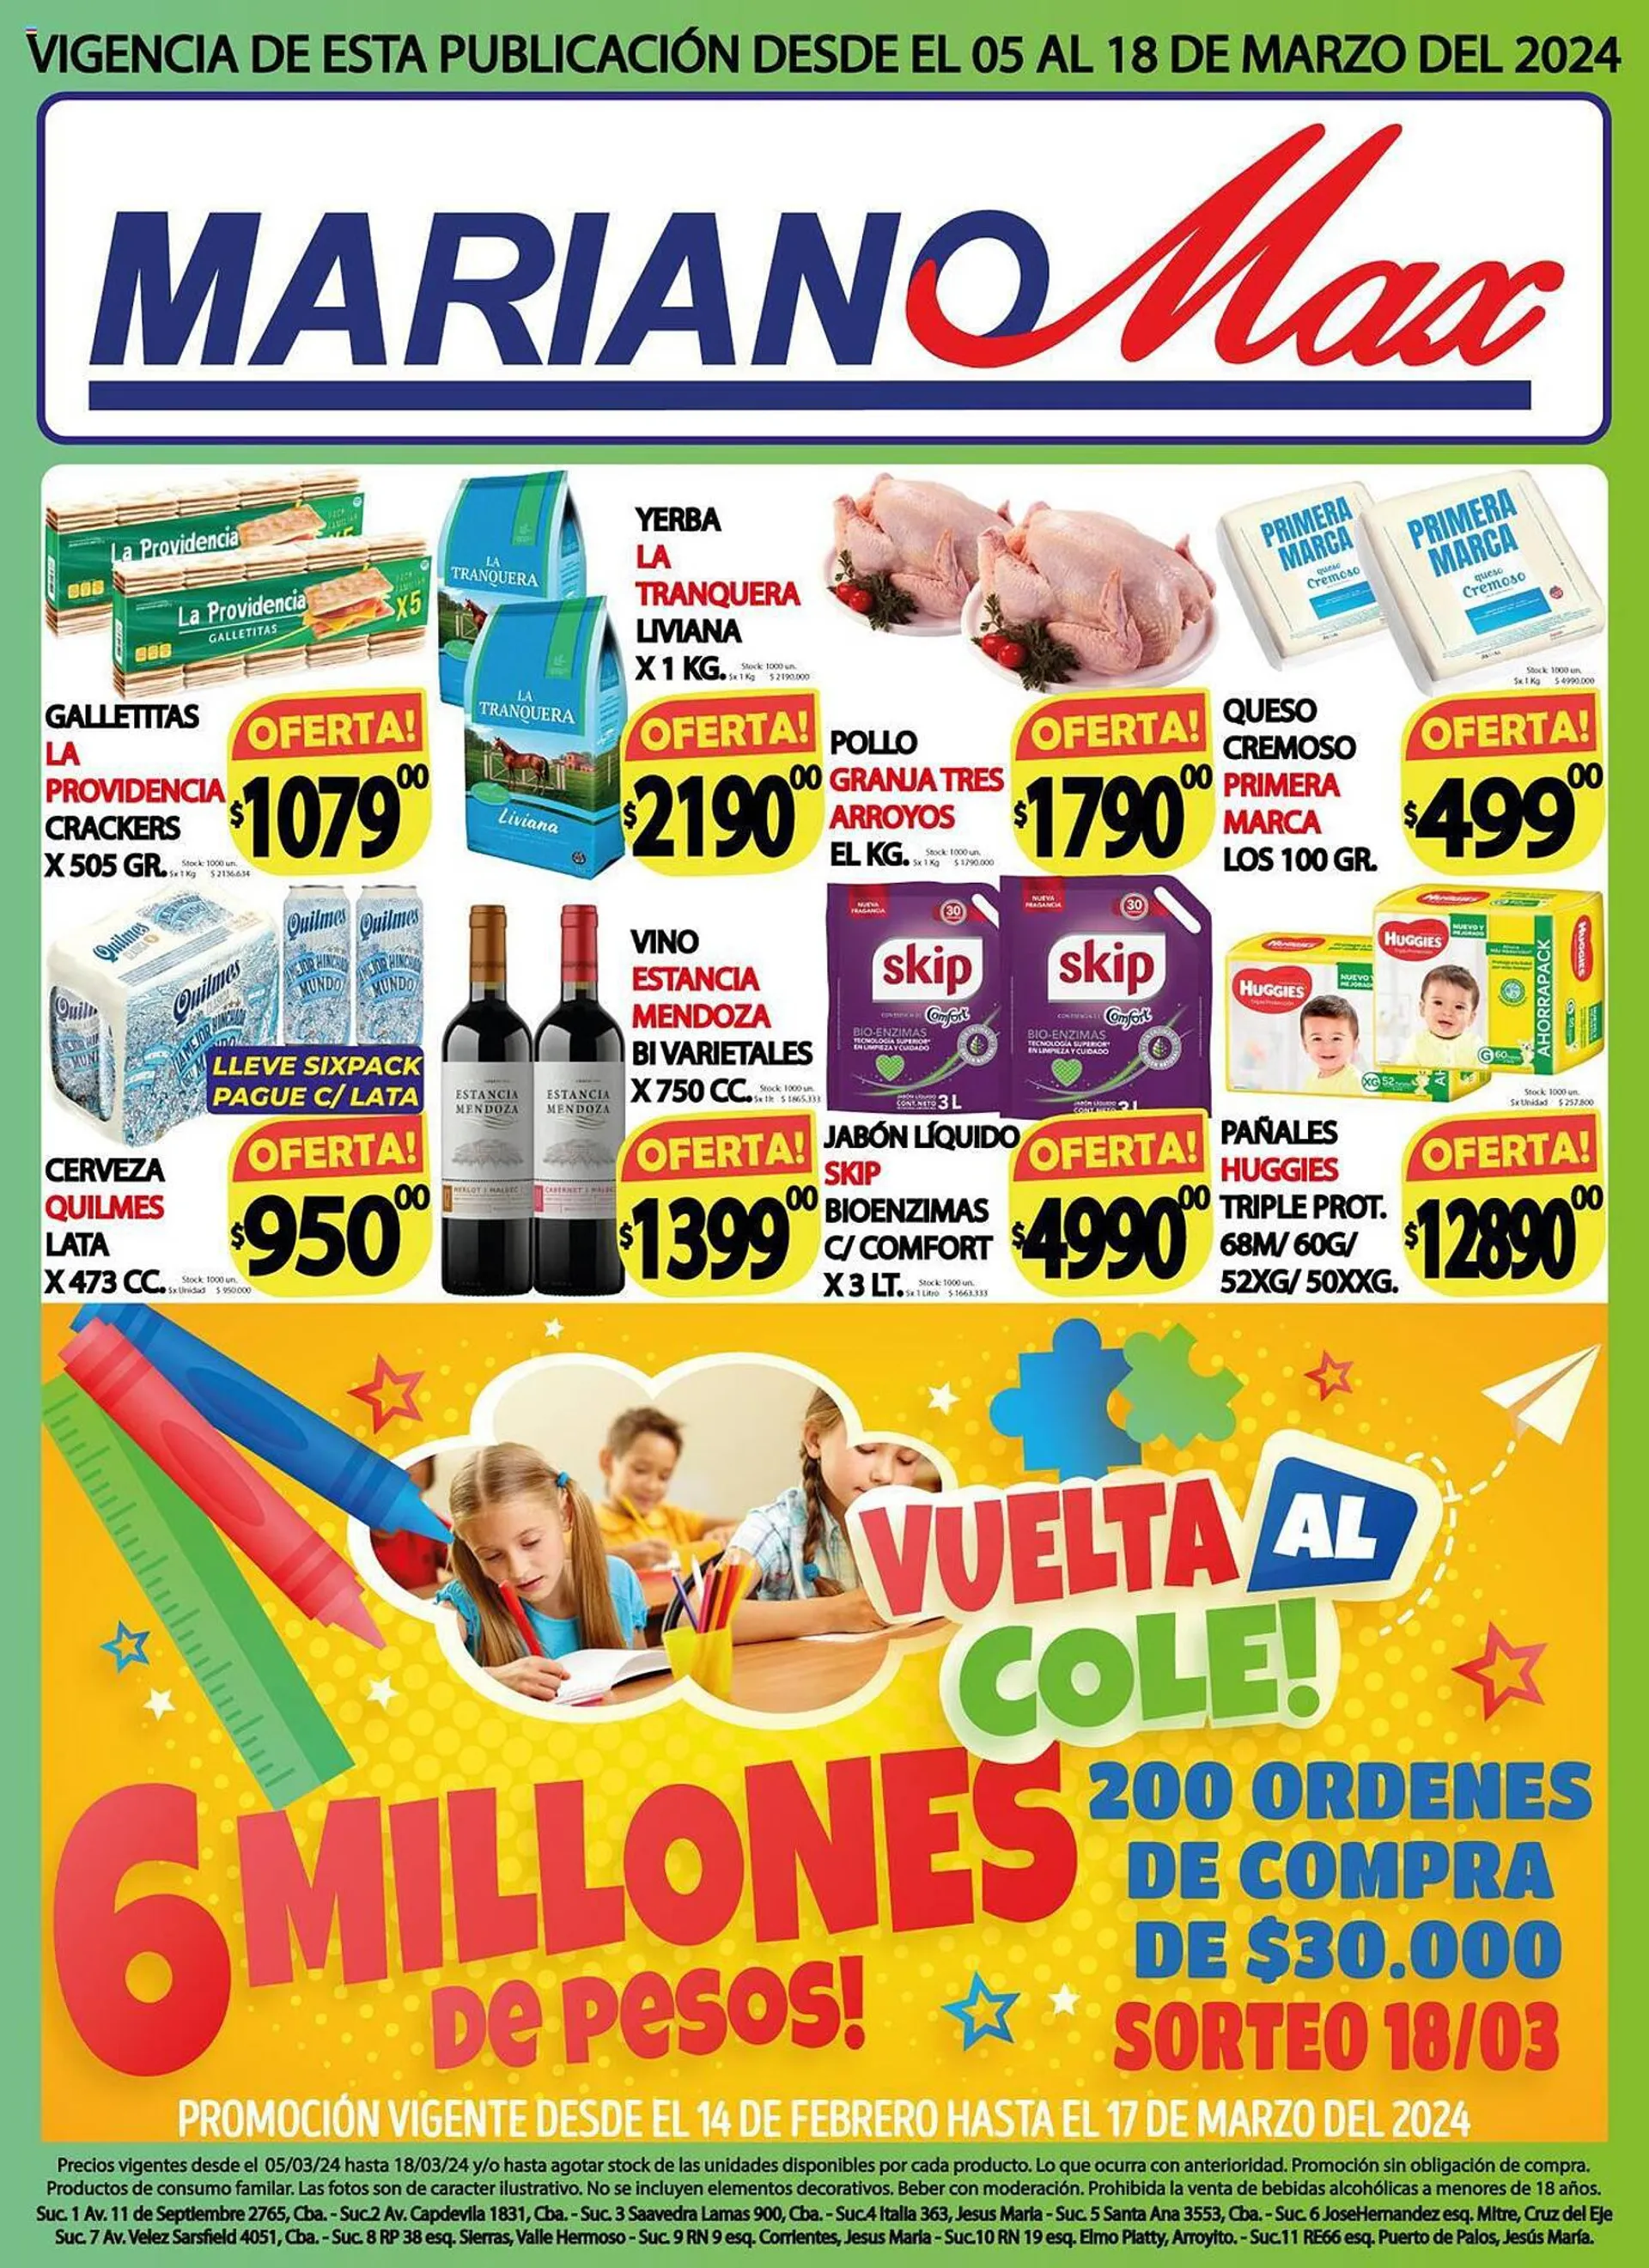 Ofertas de Catálogo Supermercados Mariano Max 5 de marzo al 18 de marzo 2024 - Página 1 del catálogo